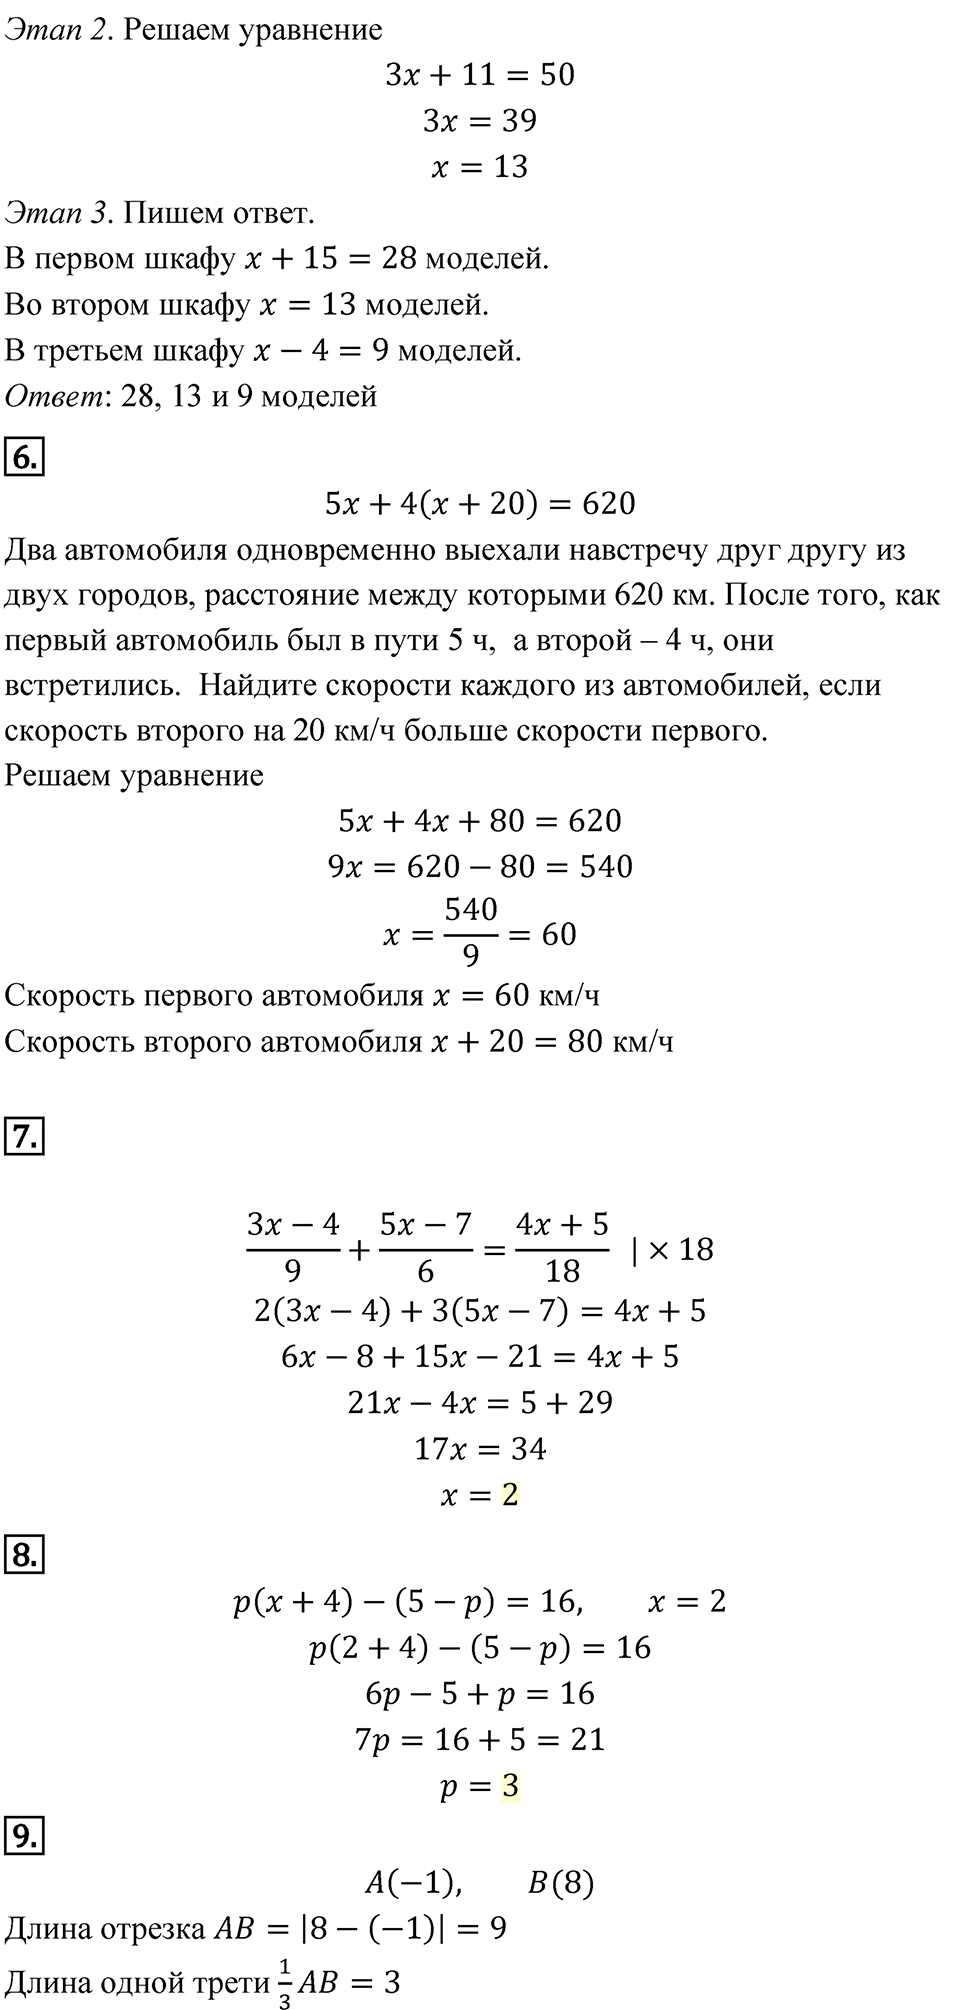 страница 33 Домашняя контрольная работа 1. Вариант 1 алгебра 7 класс Мордкович 2021 год